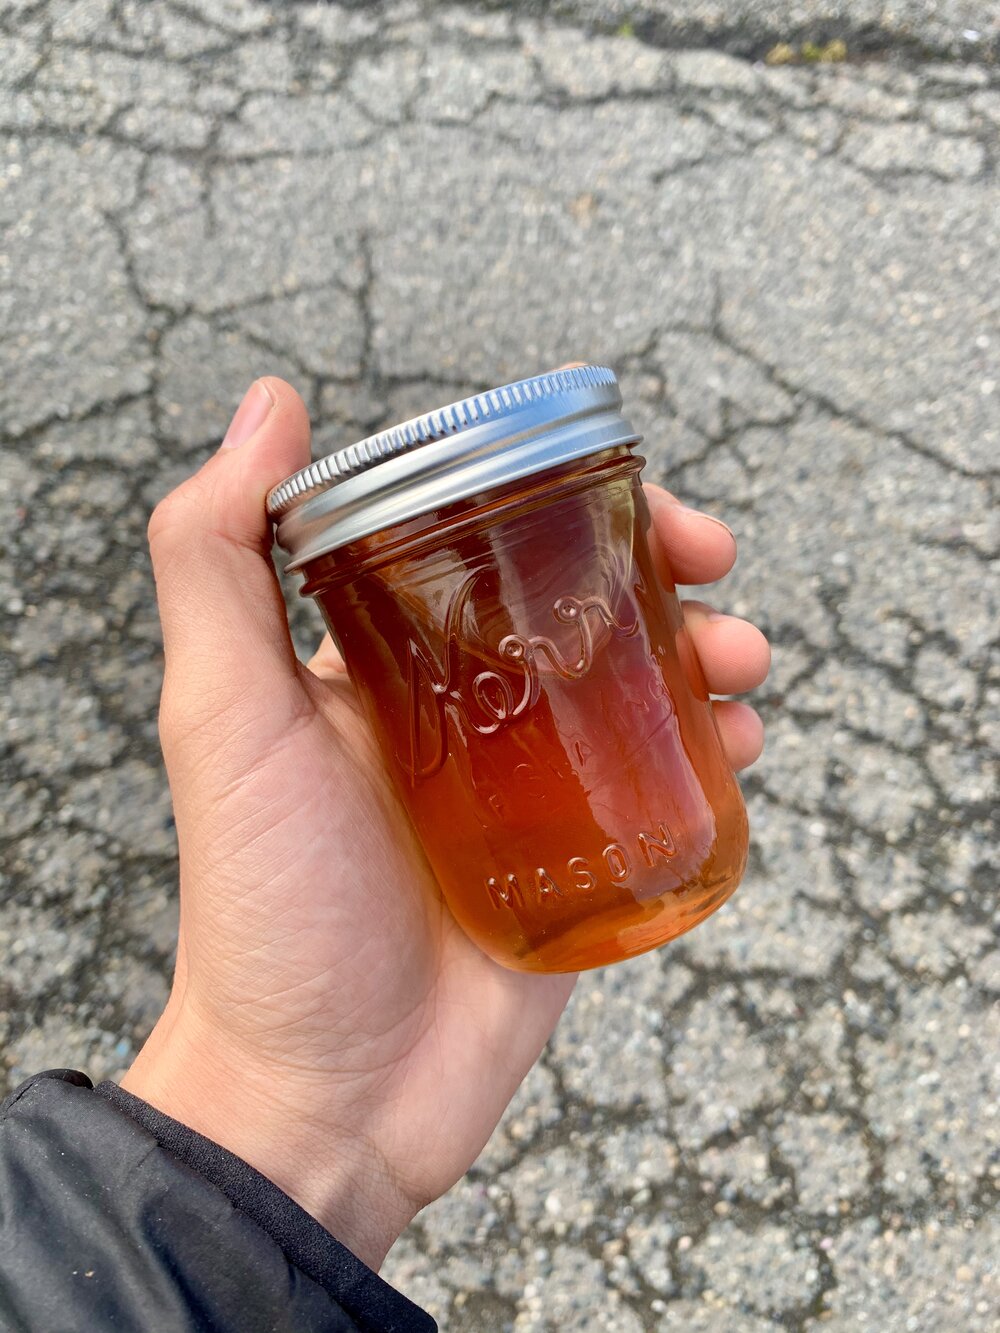 Wildflower Honey (WA)